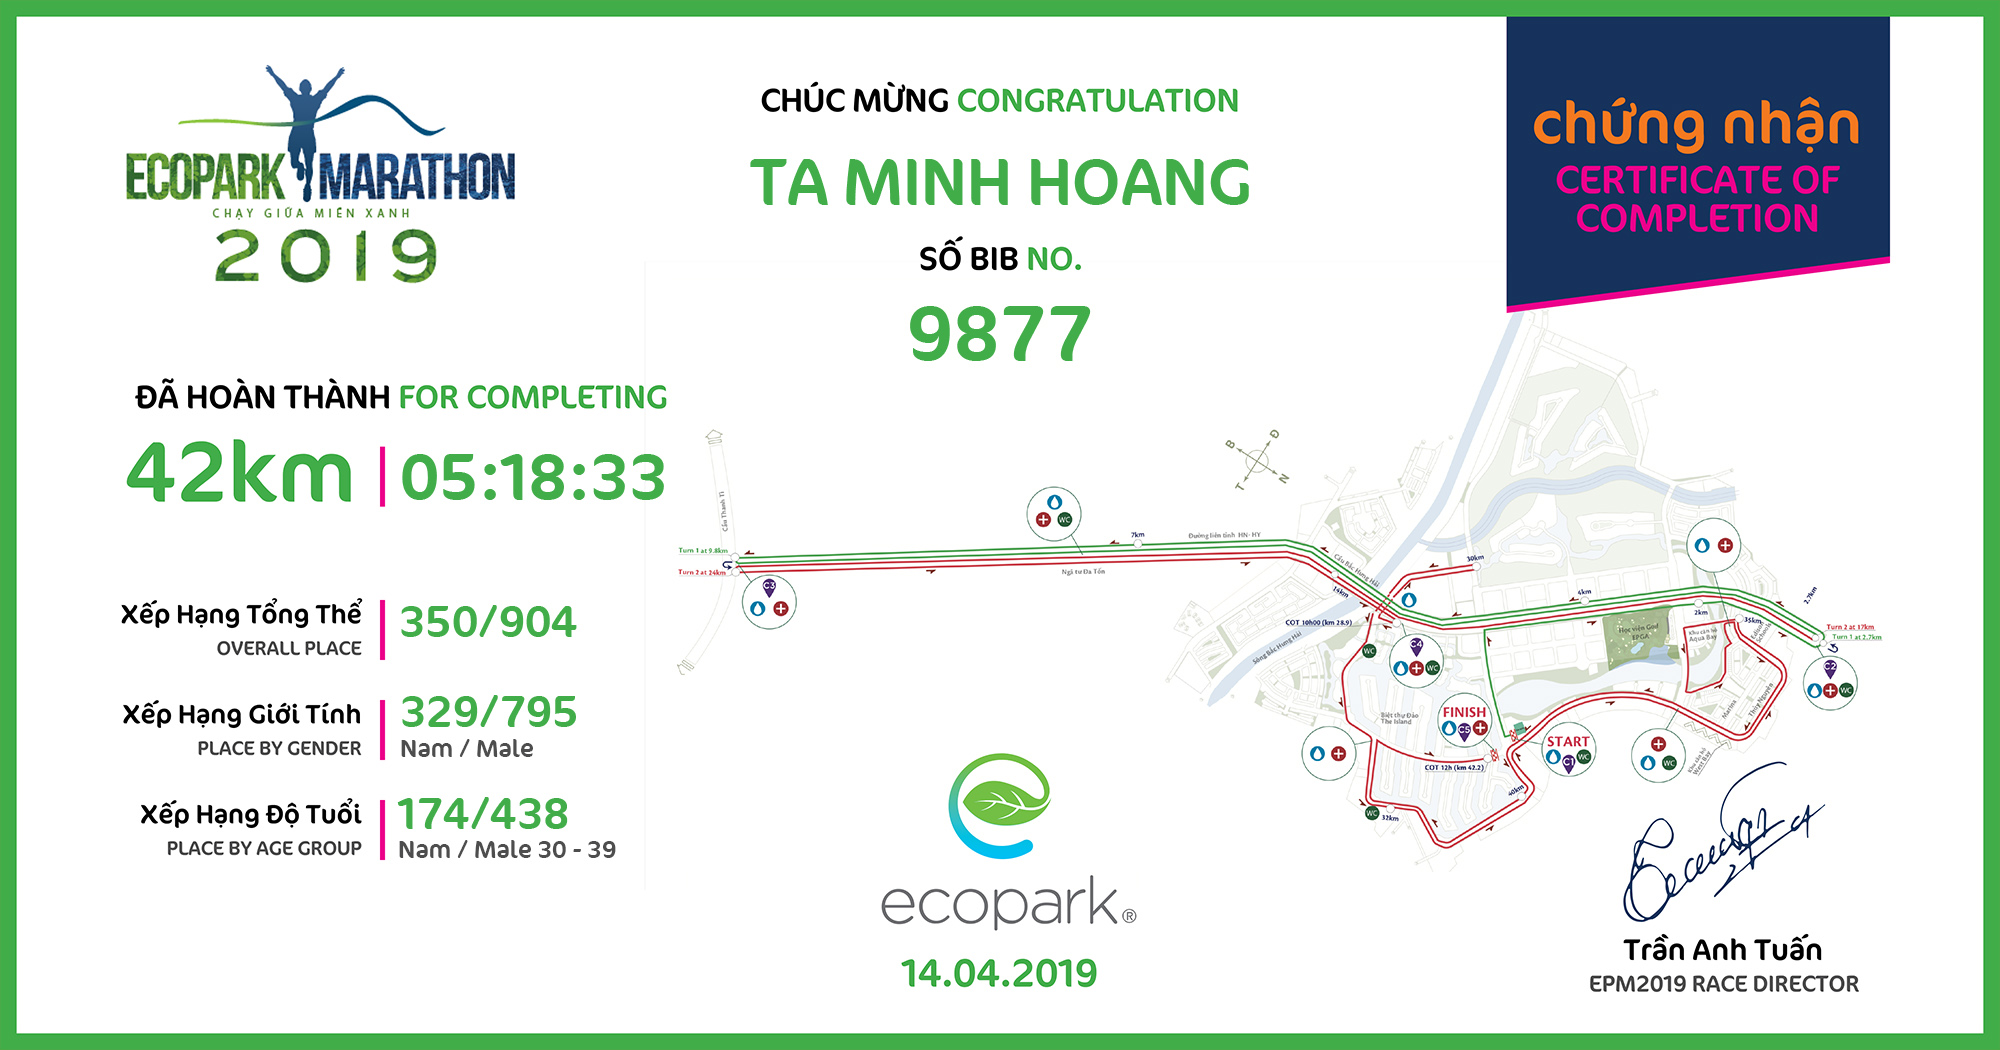 9877 - TA MINH HOANG